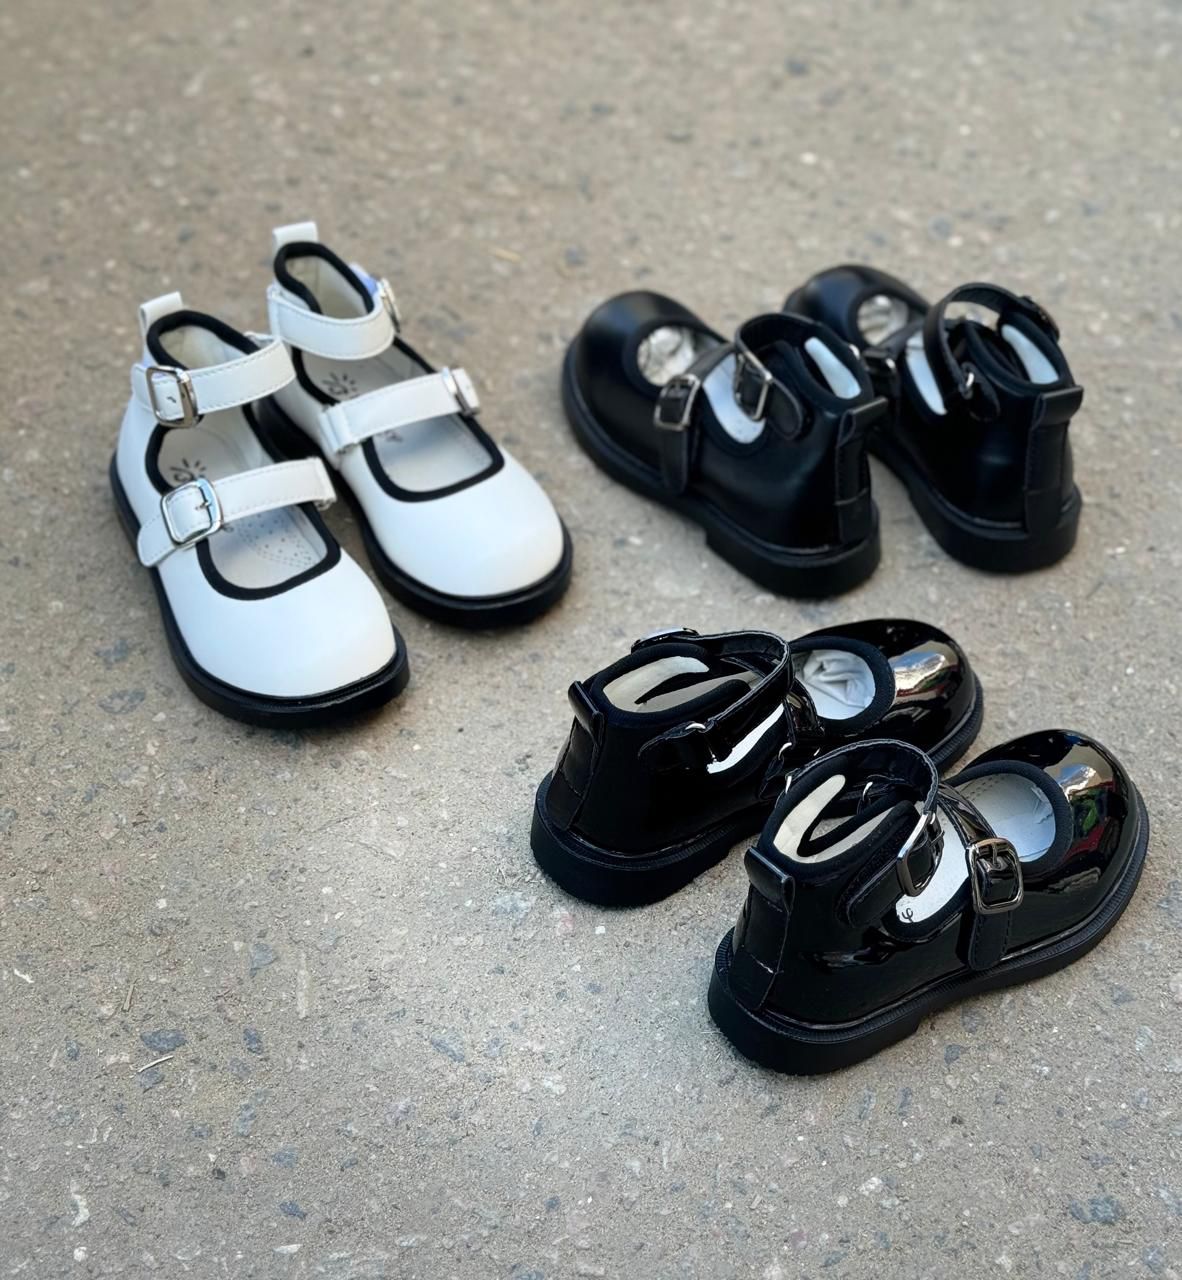 картинка Детские весенние туфли BESSKY SO-242-40 (8 пар в коробе, размер 26-31) от оптового интернет-магазина Shoesopt.by